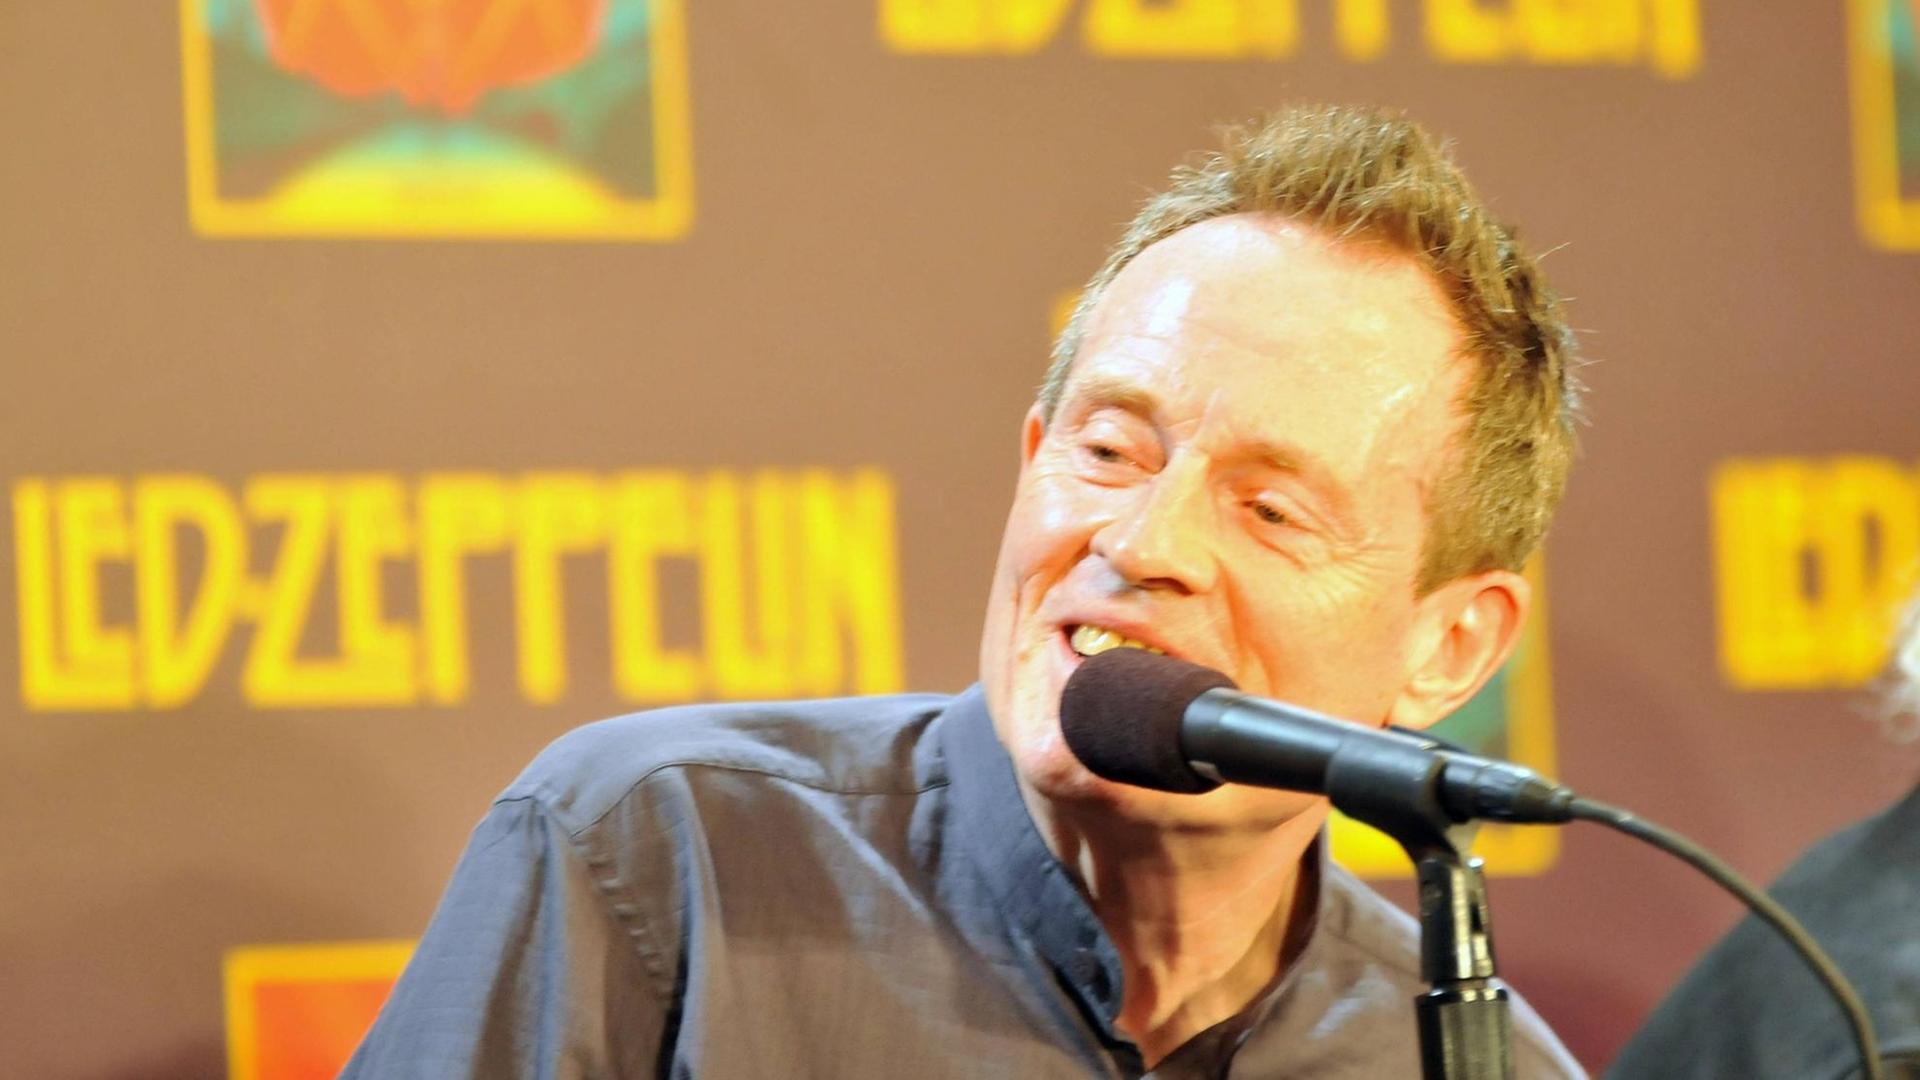 Ein Mann mit kurzen Harren sitzt vor einem Mikrofon. Im Hintergrund befindet sich eine Plakatwand mit dem Schriftzug "Led Zeppelin".